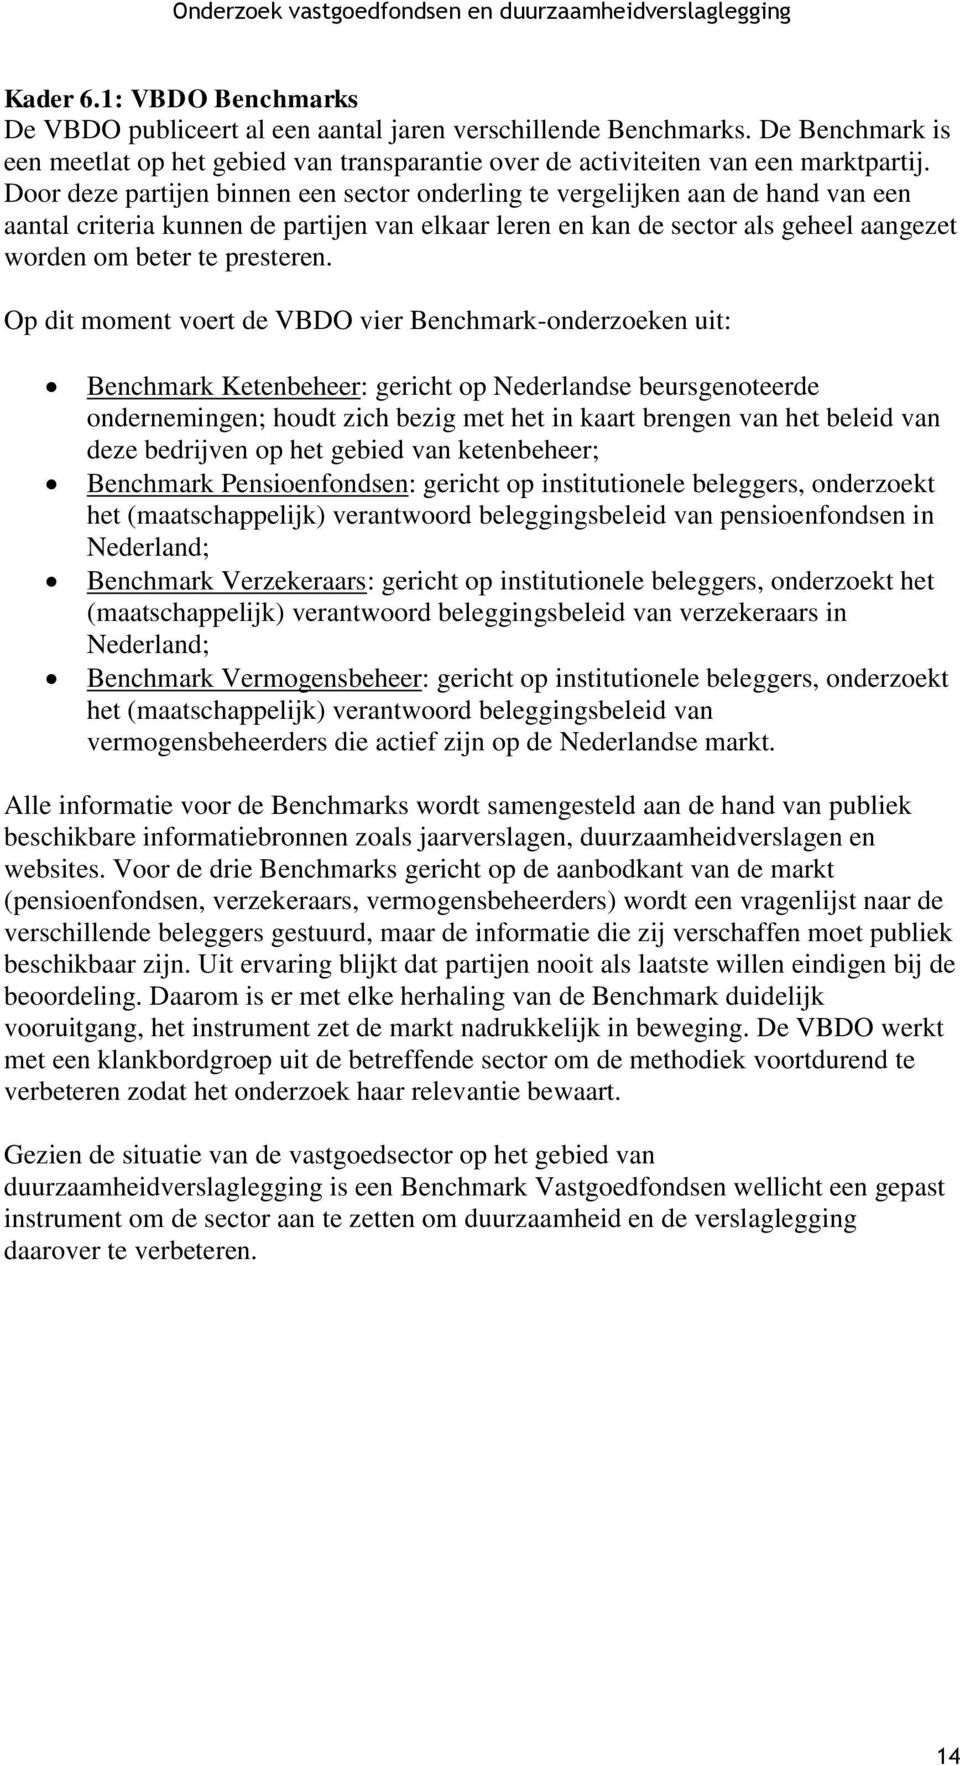 Op dit moment voert de VBDO vier Benchmark-onderzoeken uit: Benchmark Ketenbeheer: gericht op Nederlandse beursgenoteerde ondernemingen; houdt zich bezig met het in kaart brengen van het beleid van